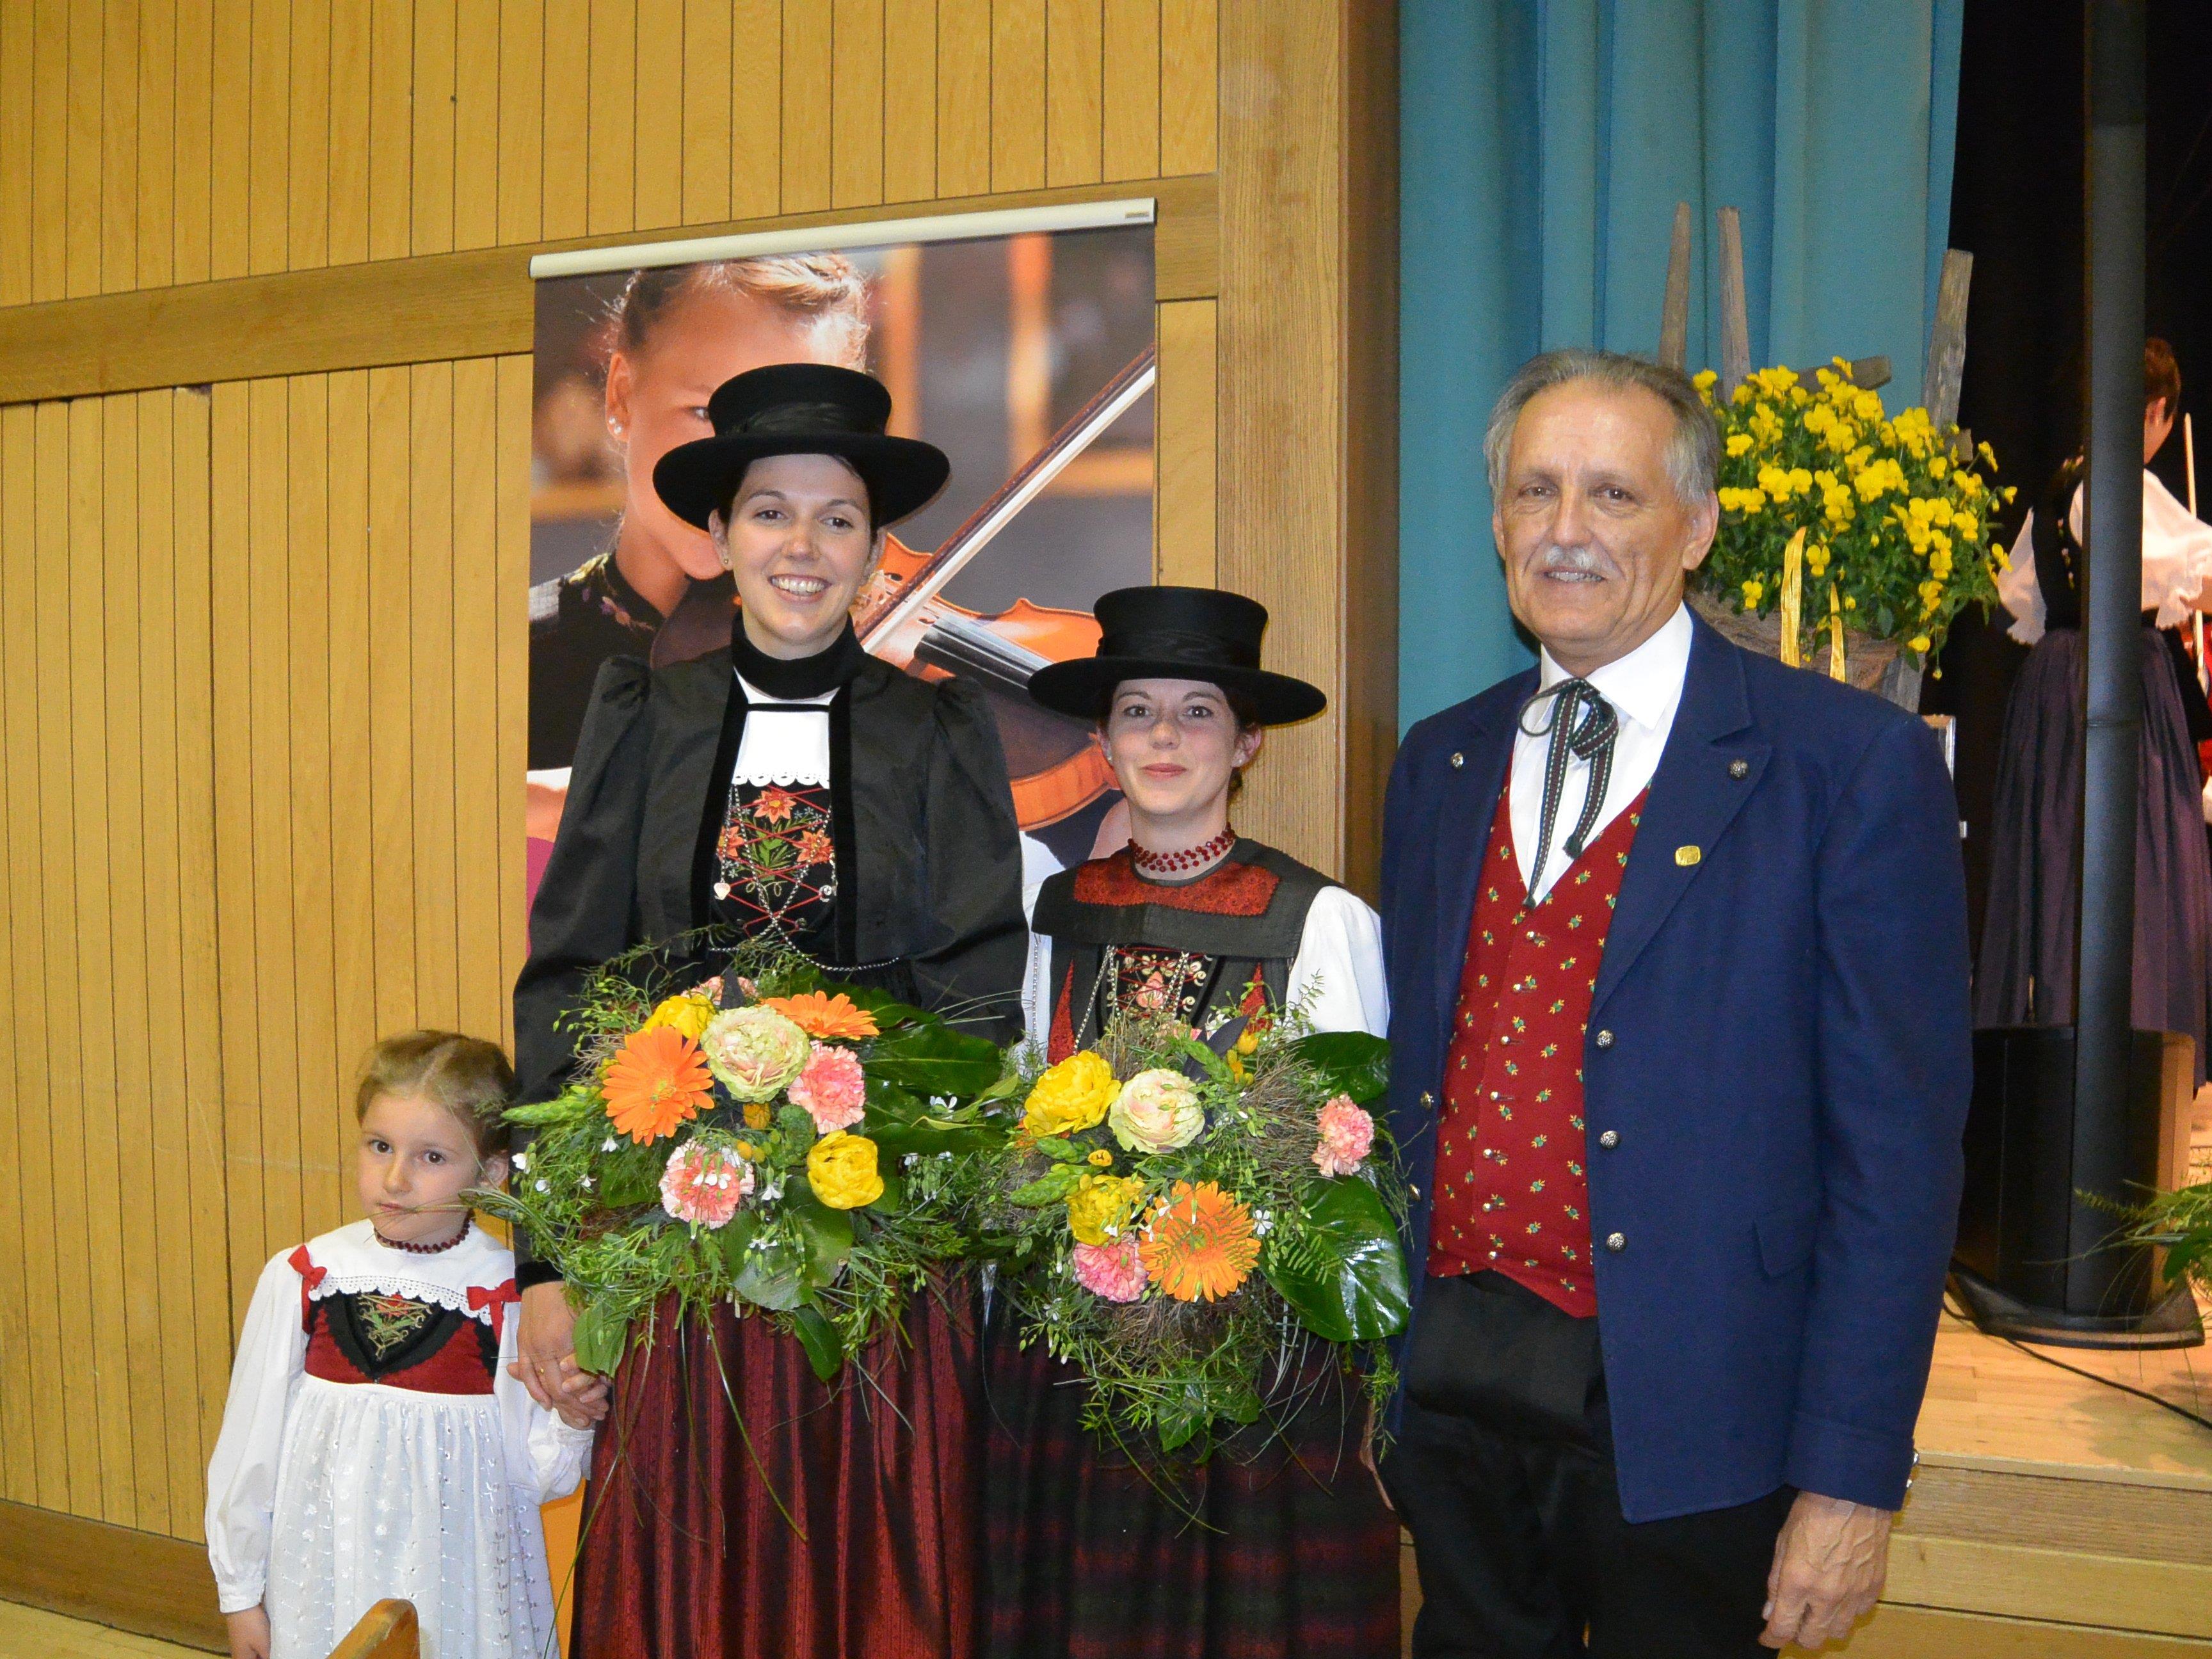 Emilia, Bianca und Verena mit Eugen Burtscher vom Landestrachtenverband